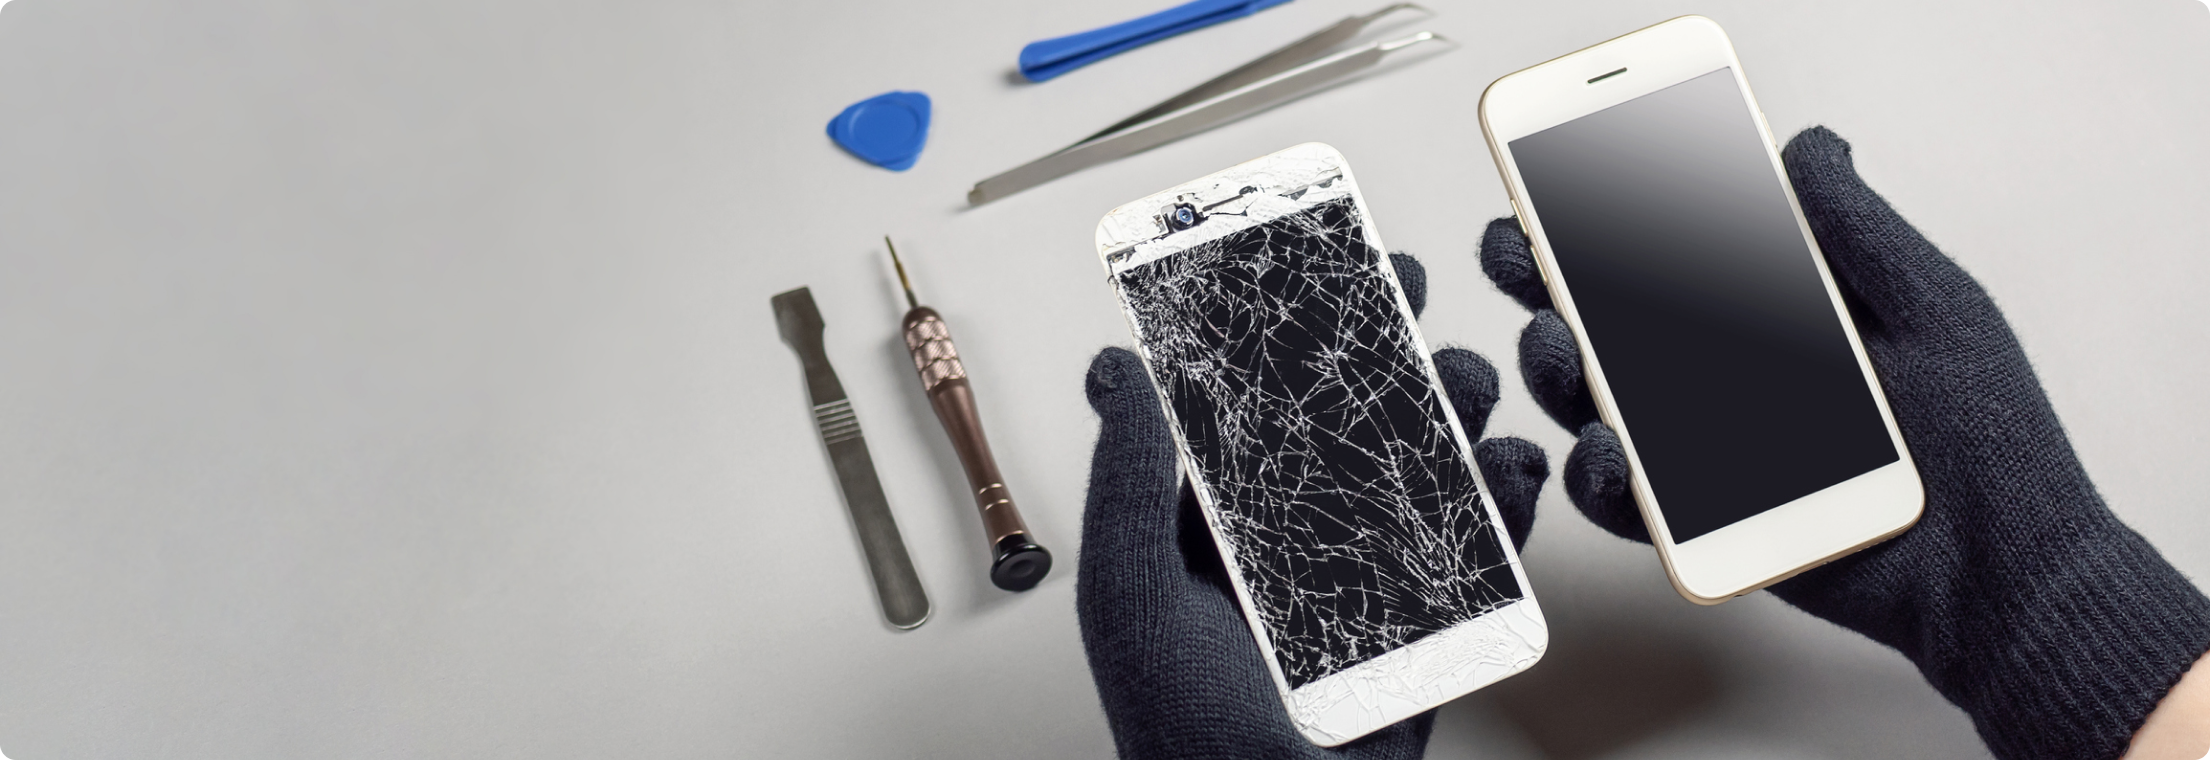 Στη φωτογραφία φαίνονται δυο χέρια με μαύρα γάντια να κρατάνε δυο λευκά κινητά τηλέφωνα, το ένα με σπασμένη οθόνη. Στο φόντο φαίνονται εργαλεία που χρησιμοποιούνται στην επιδιόρθωση κινητων τηλεφώνων.